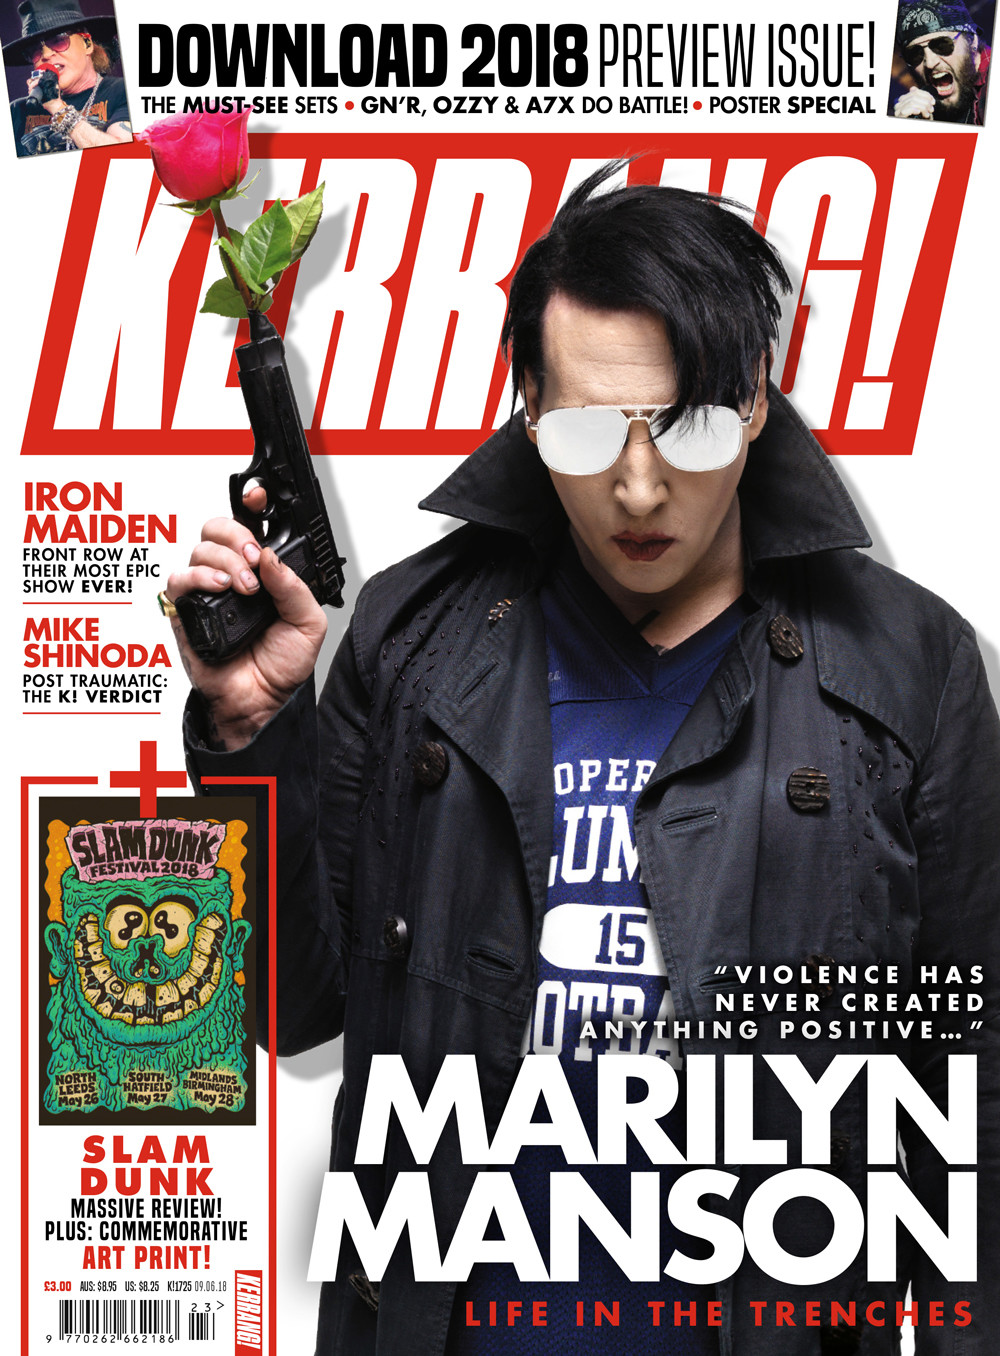 K1725 Marilyn Manson cover 4ebf62eb0b1d8fb7d4a9dd8bb04f2b32.jpg